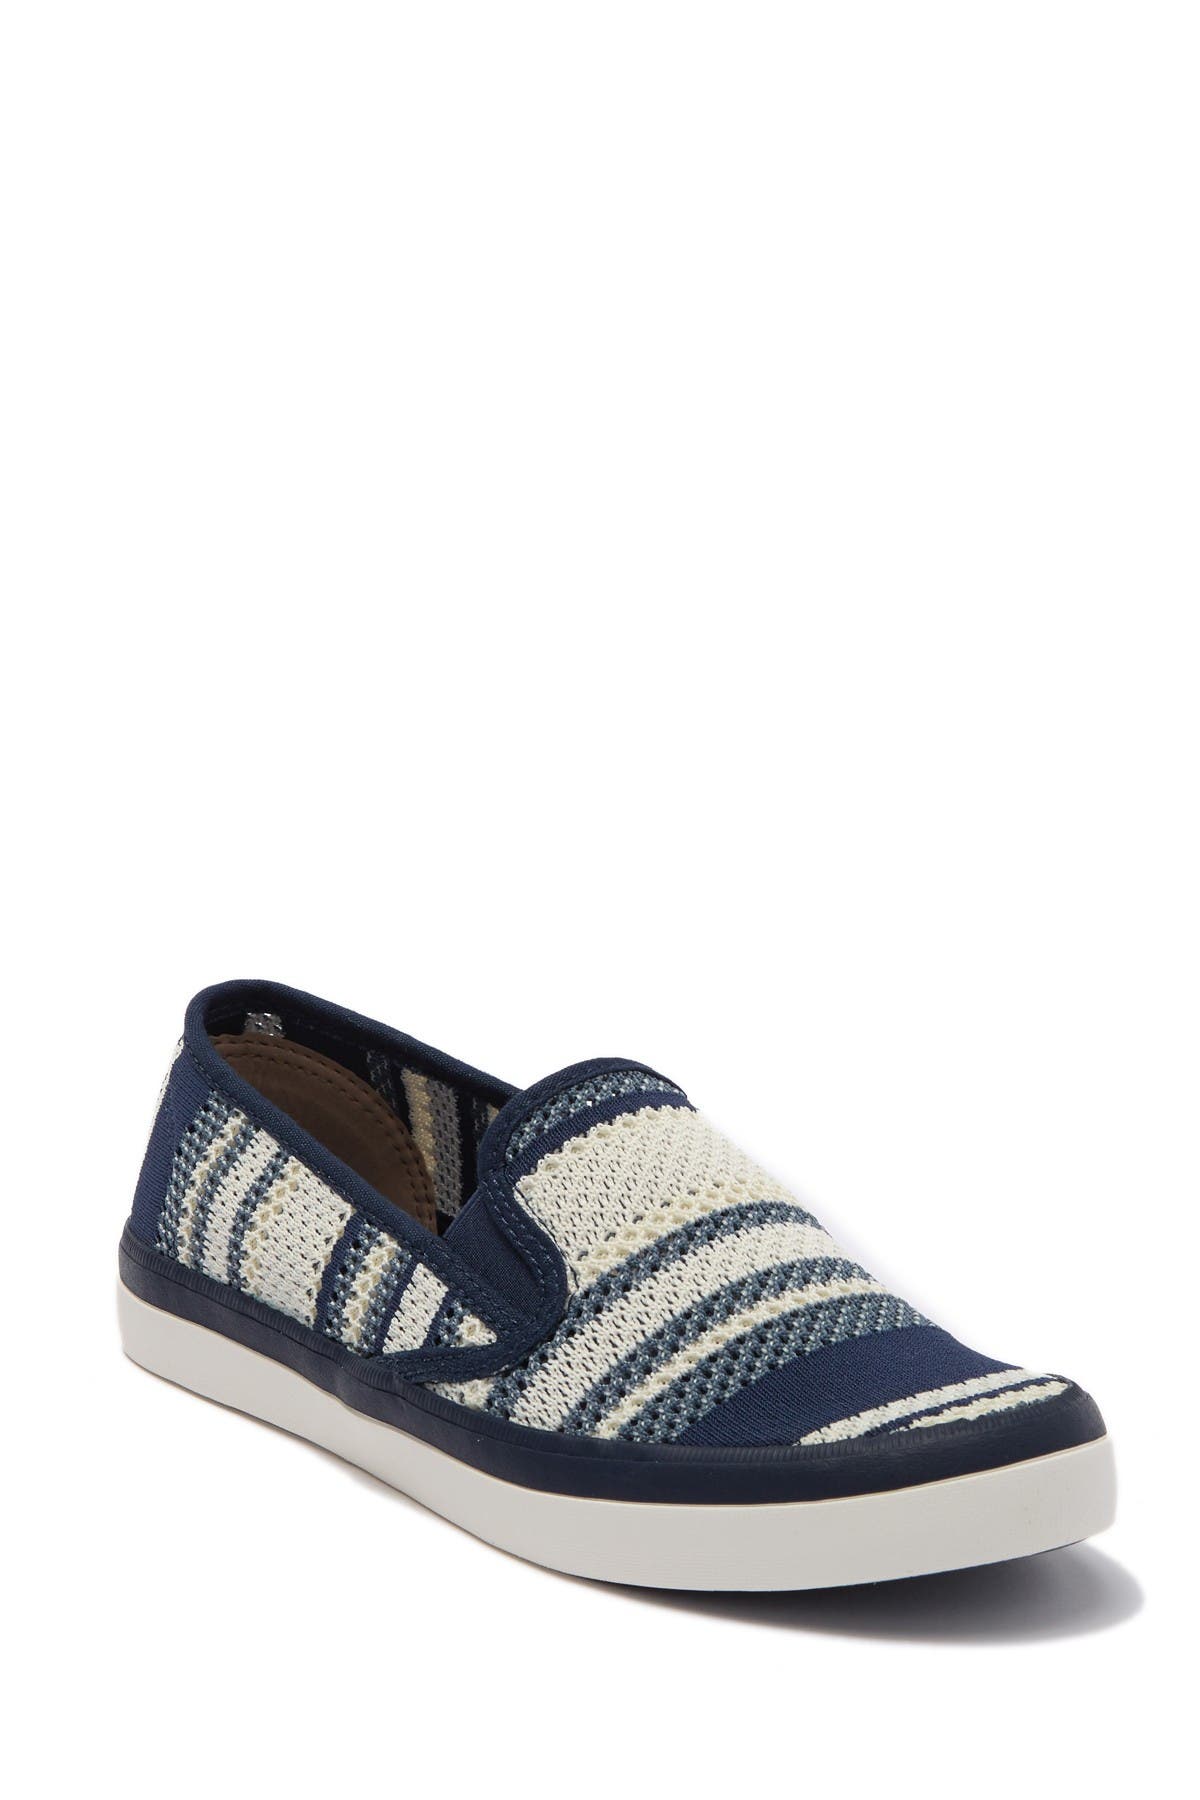 Sperry | Seaside Knit Slip-On Sneaker 